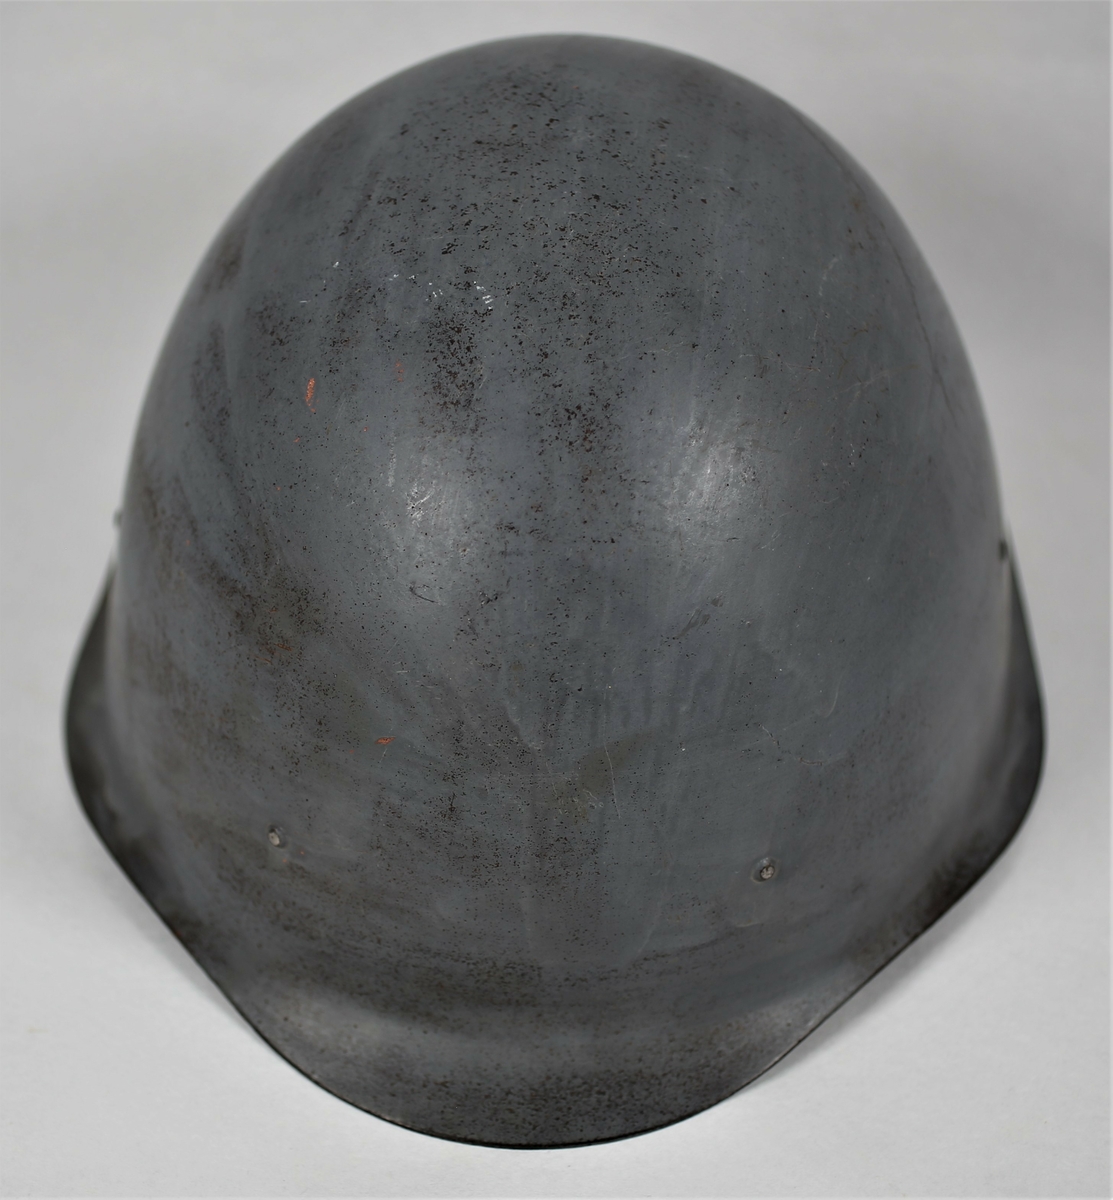 Russisk hjelm som ble brukt under Petsamo - Kirkenes operasjonen. Er med hakestropp.